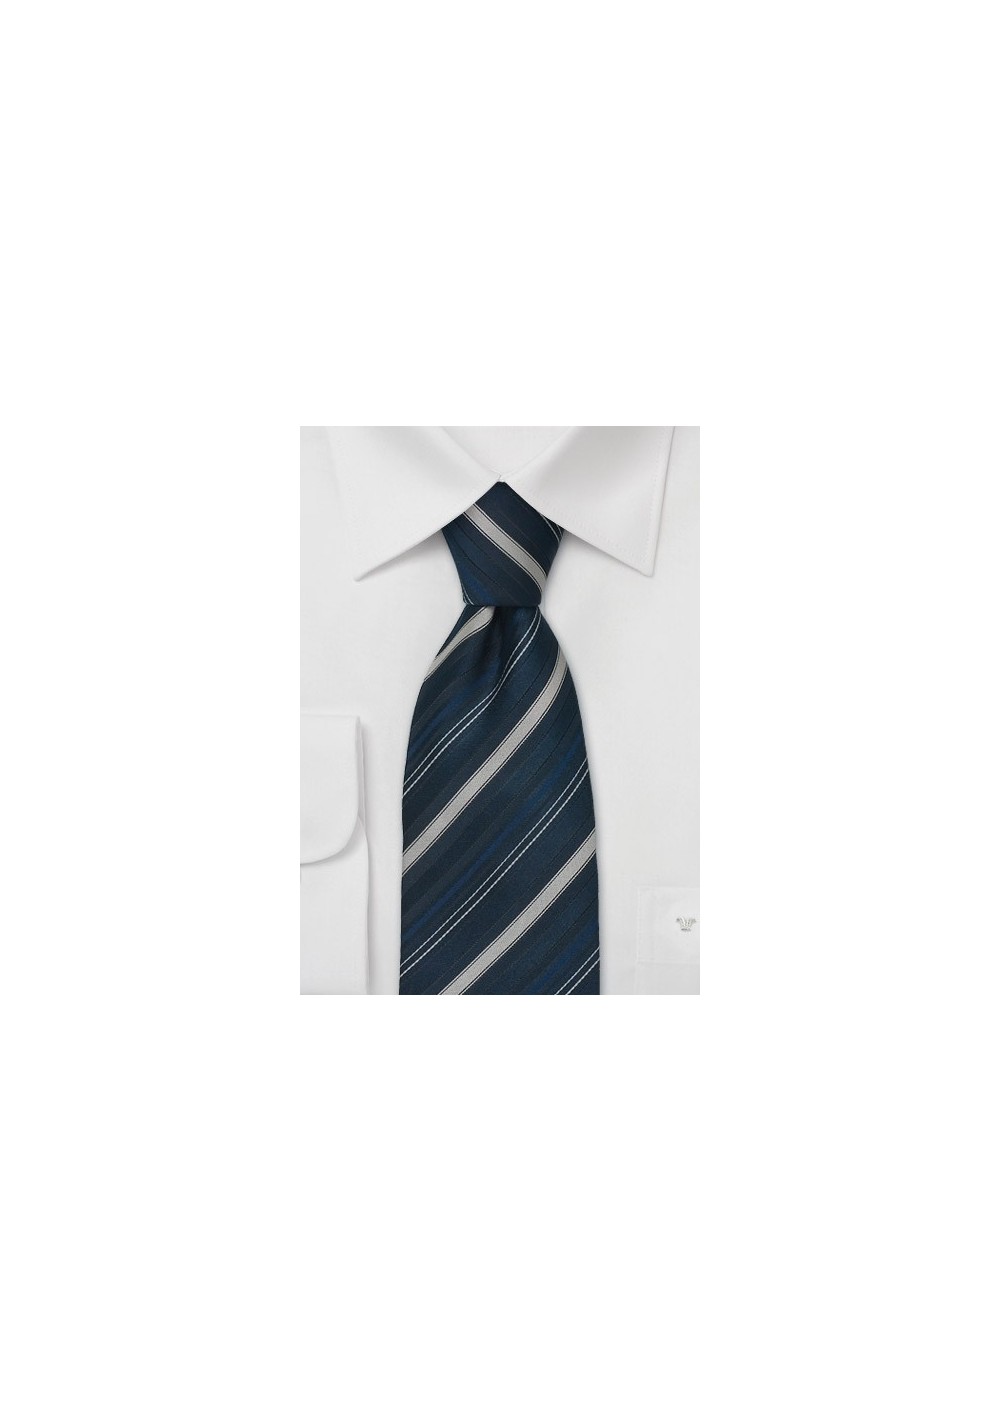 Silk neckties -  Navy blue silk tie with silver stripes